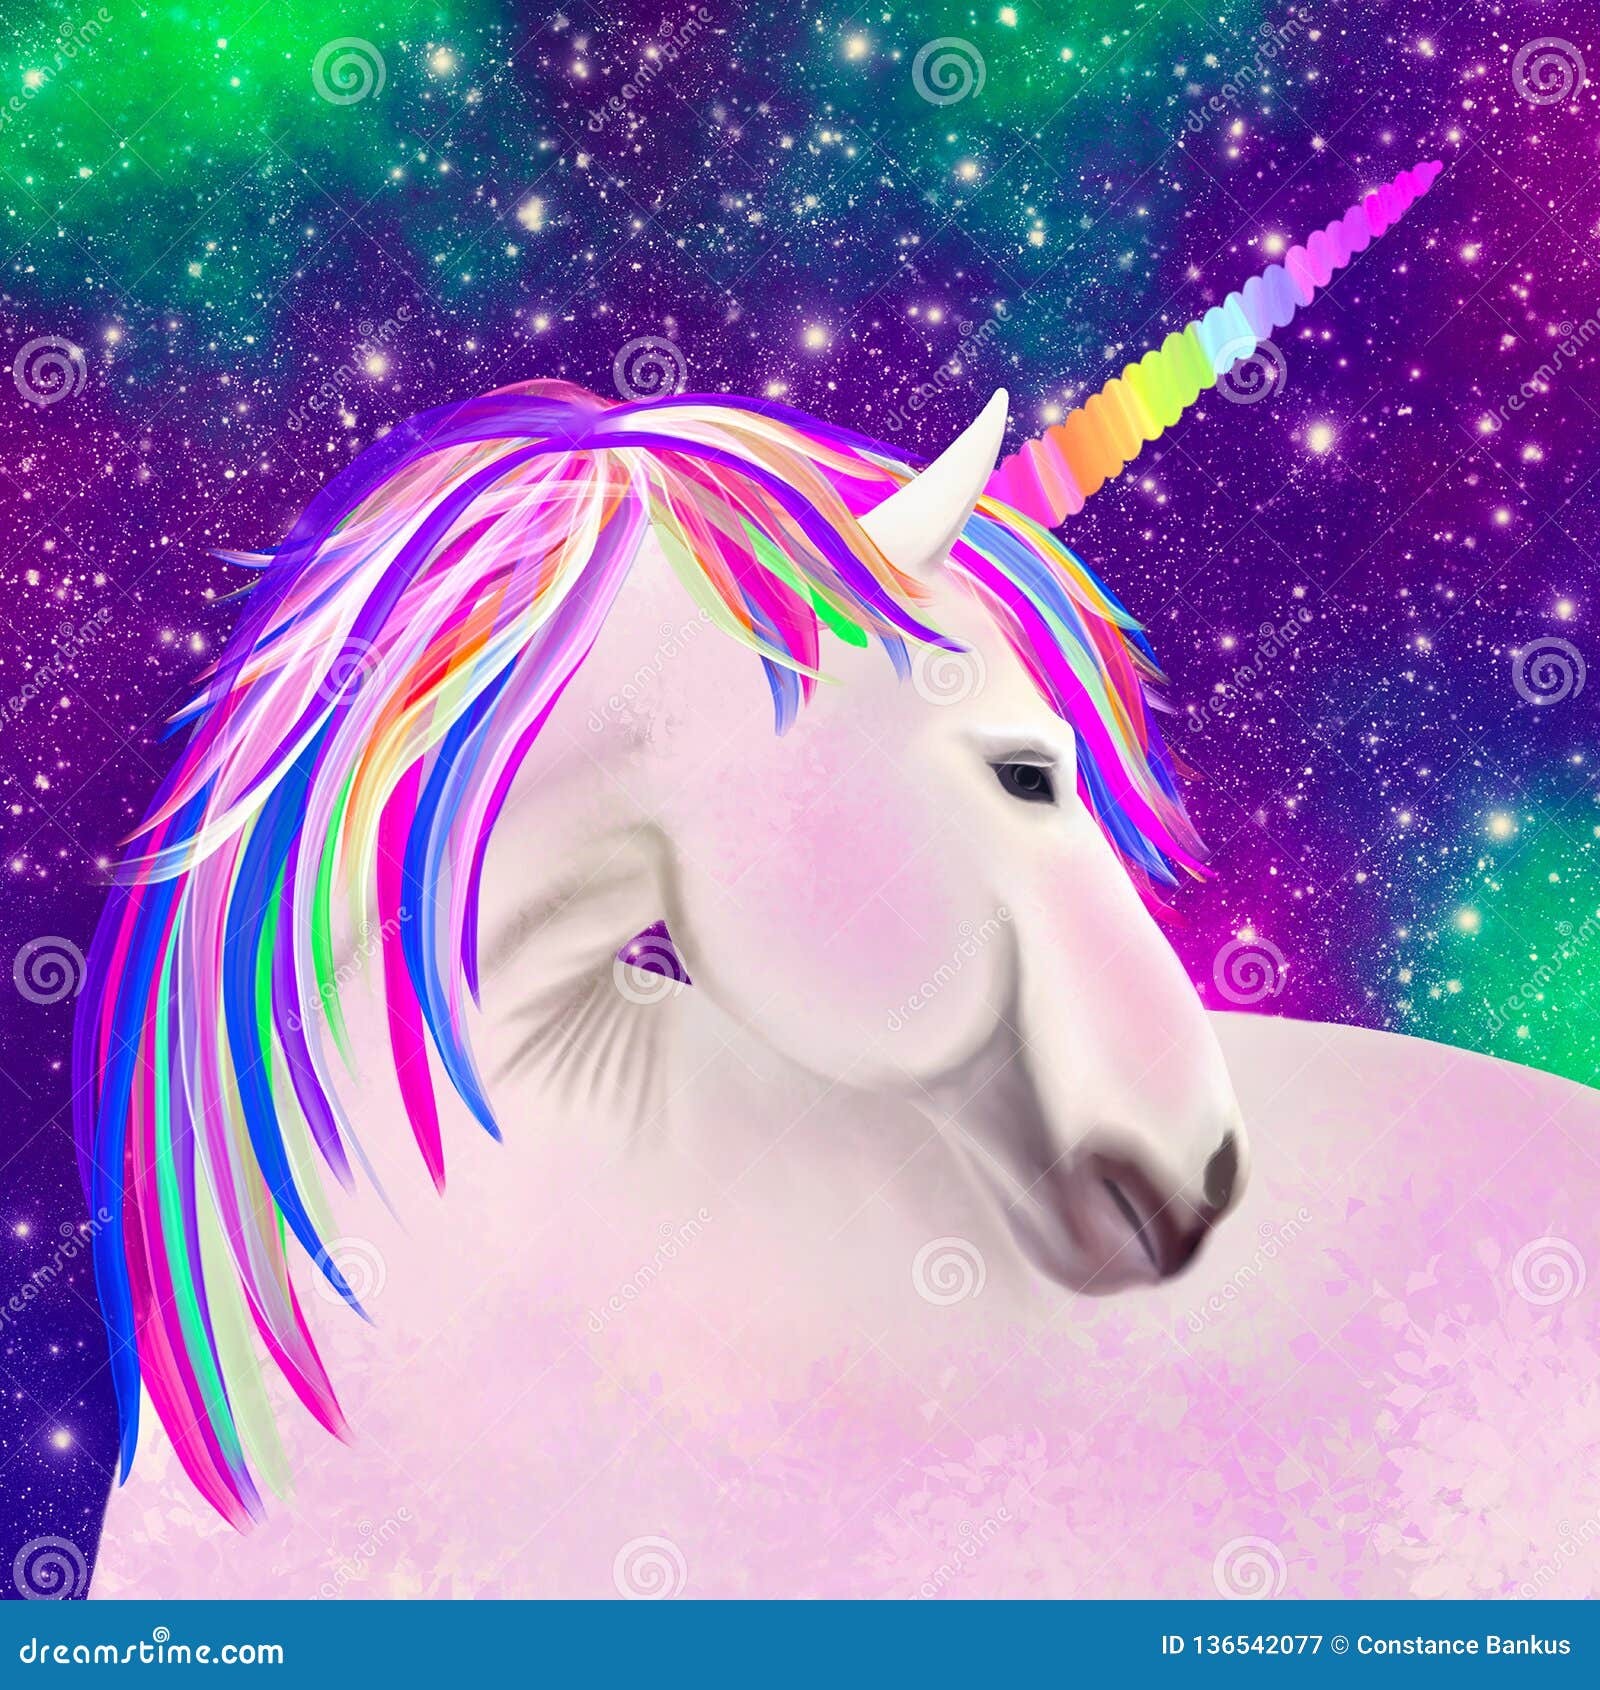 Galaxy Unicorn In Space Stock Illustration Illustration Of Rainbow 136542077